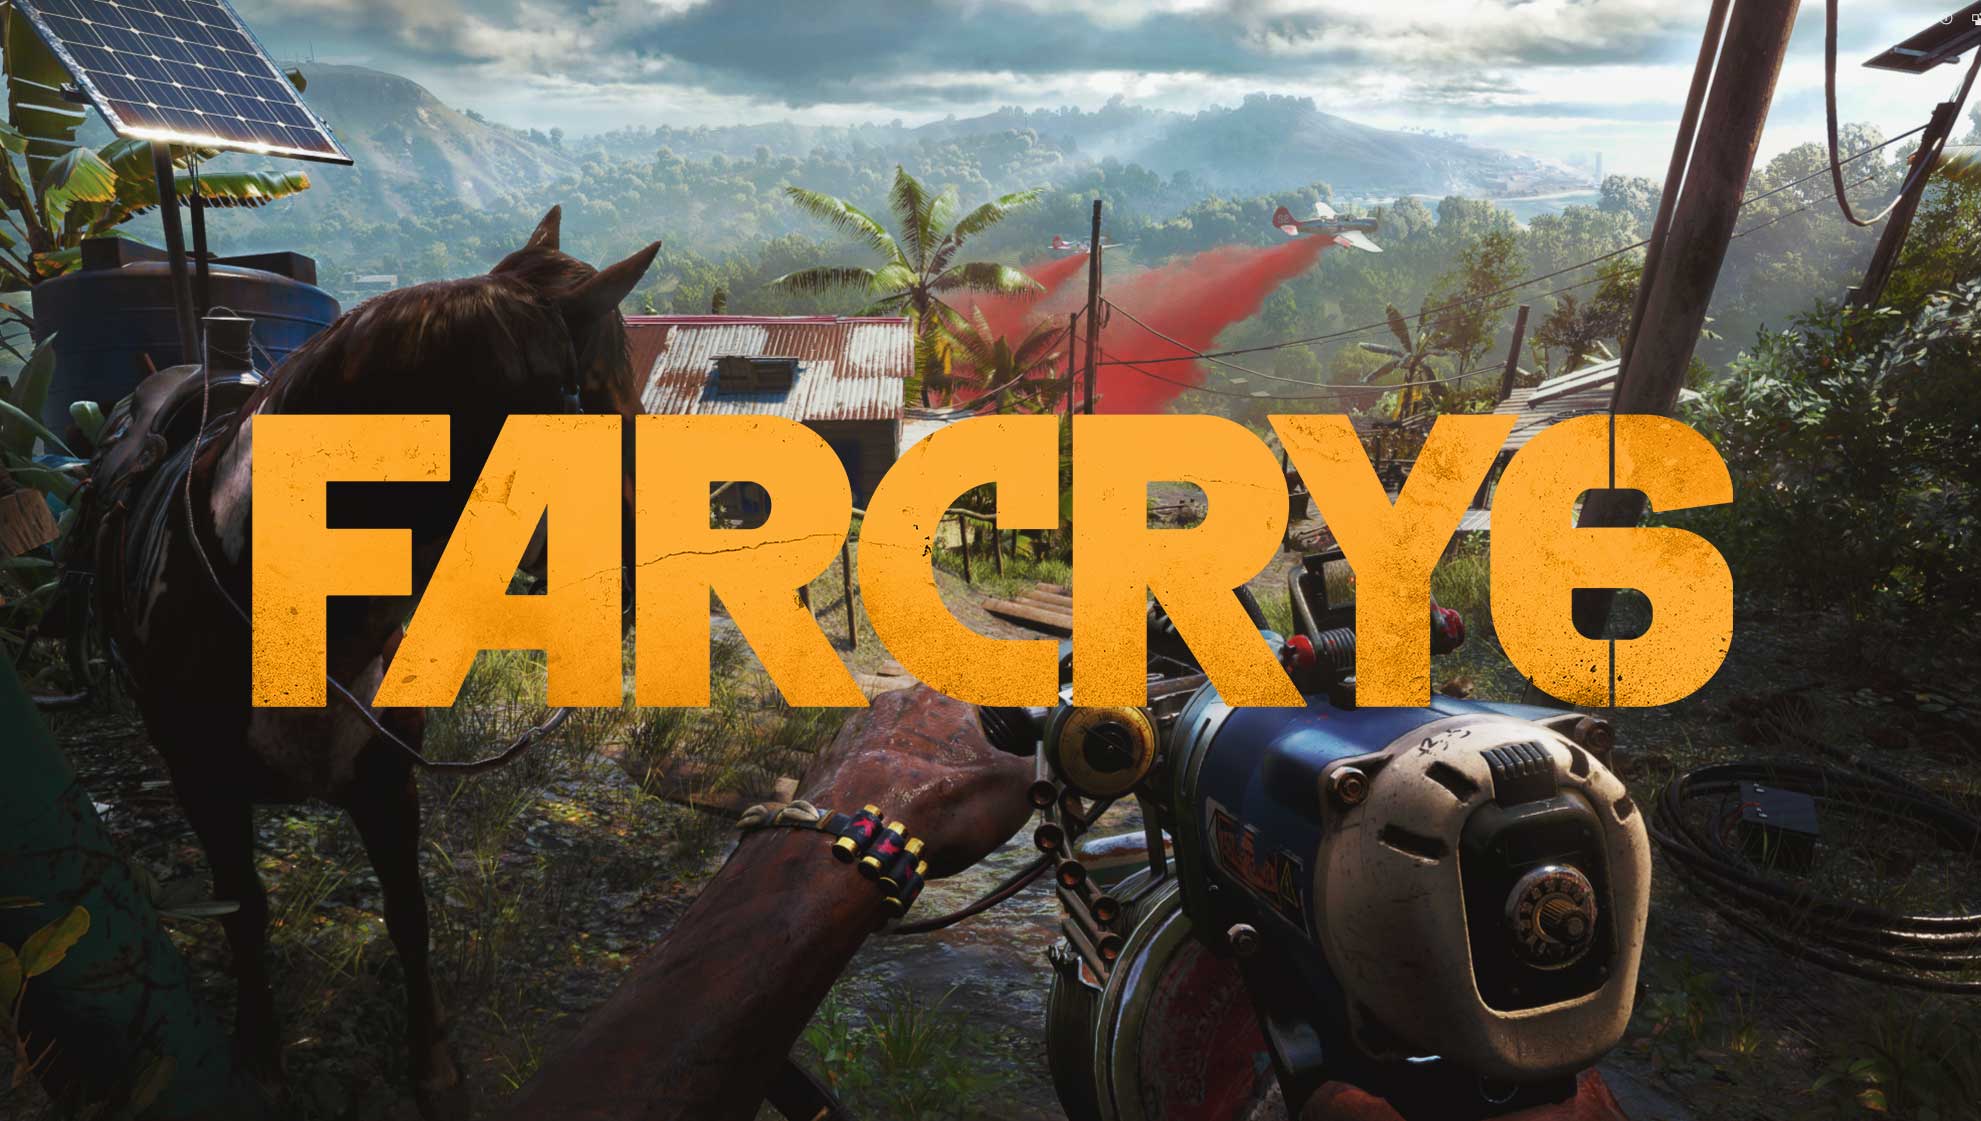 ماهو تاريخ اصدار لعبة Far Cry 6